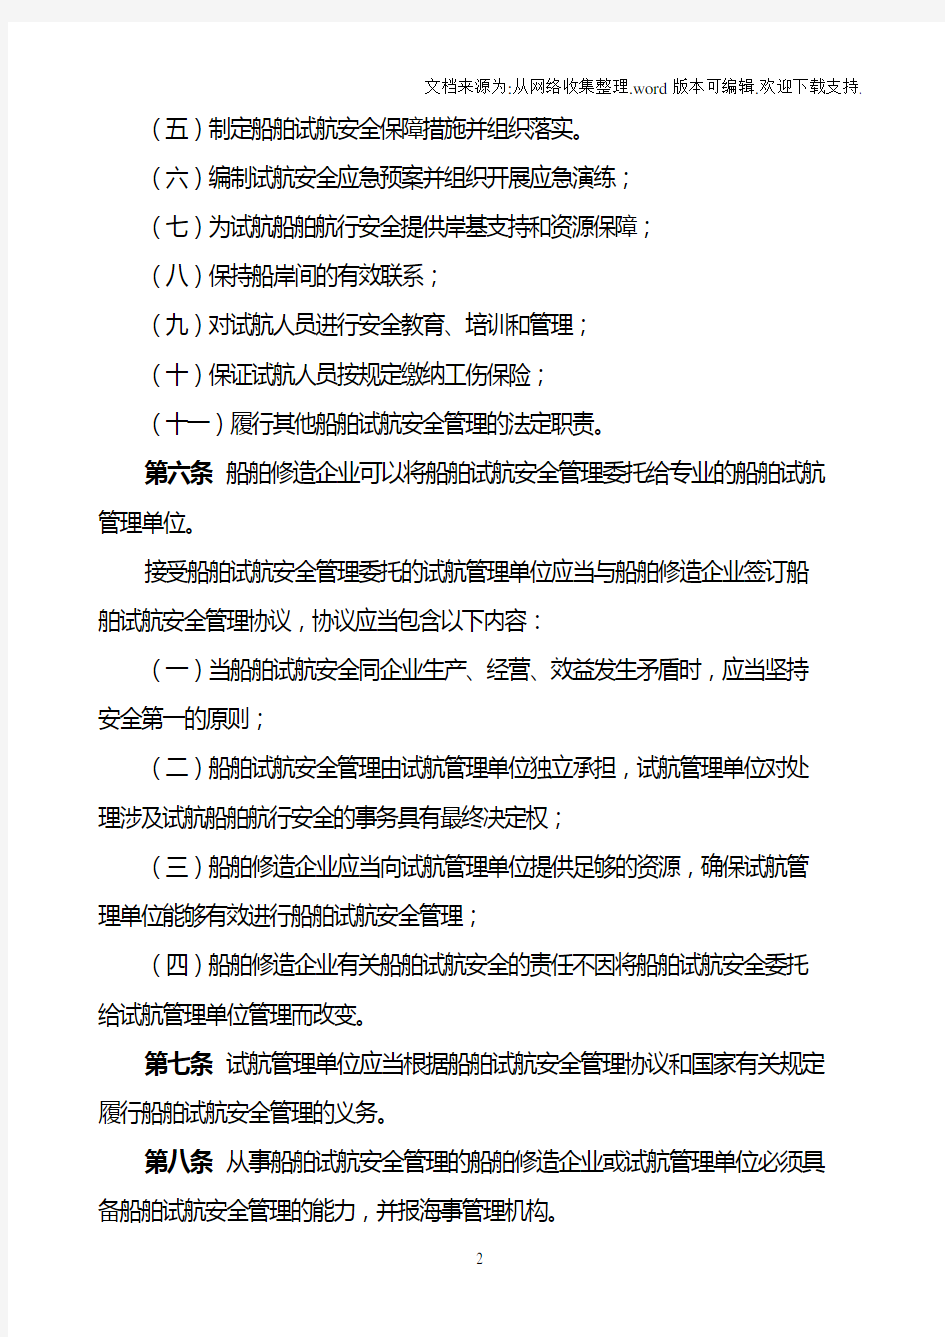 中华人民共和国江苏海事局船舶试航安全监督管理规定(试行)